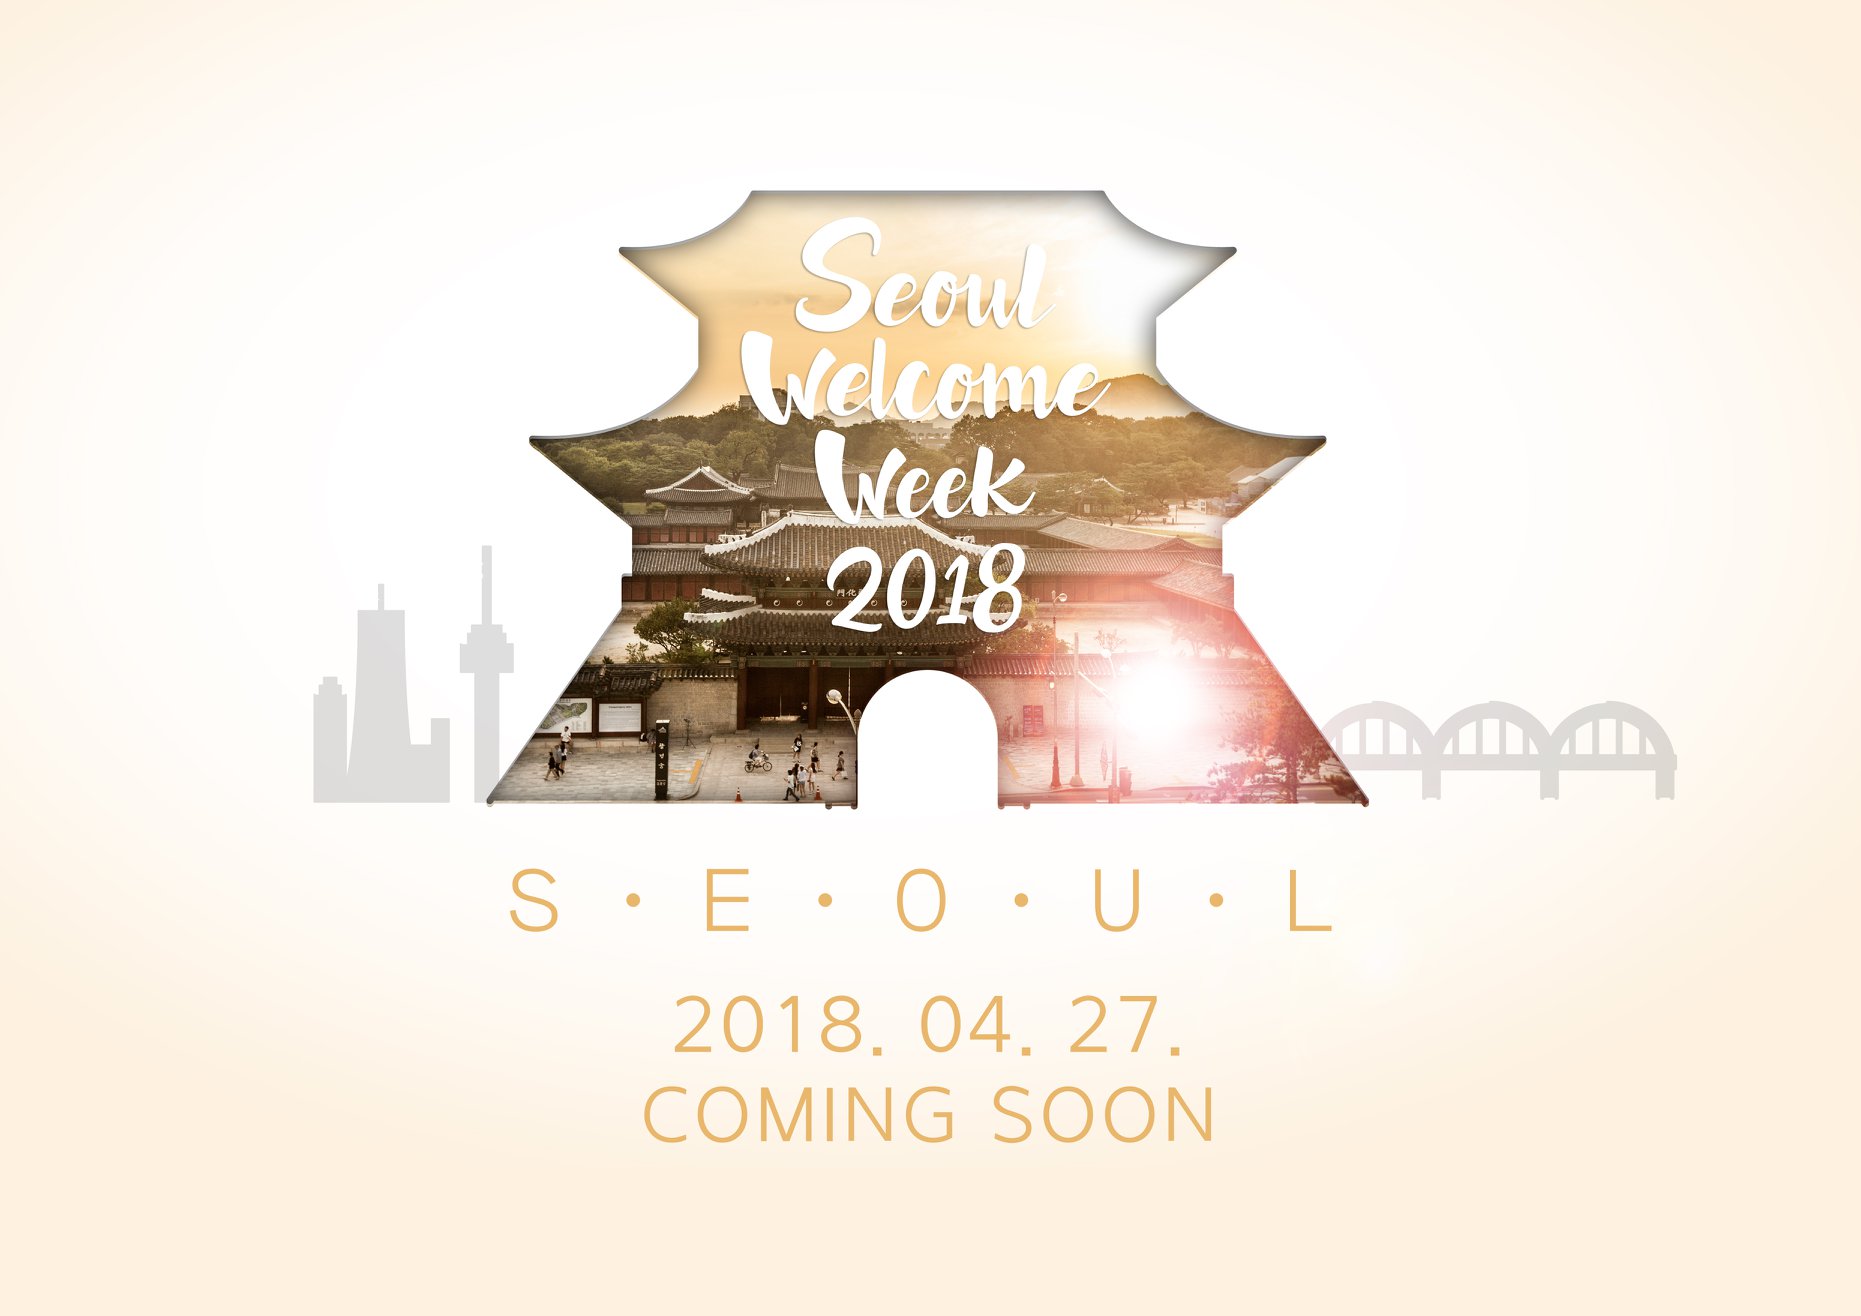 Seoul Welcome Week 2018